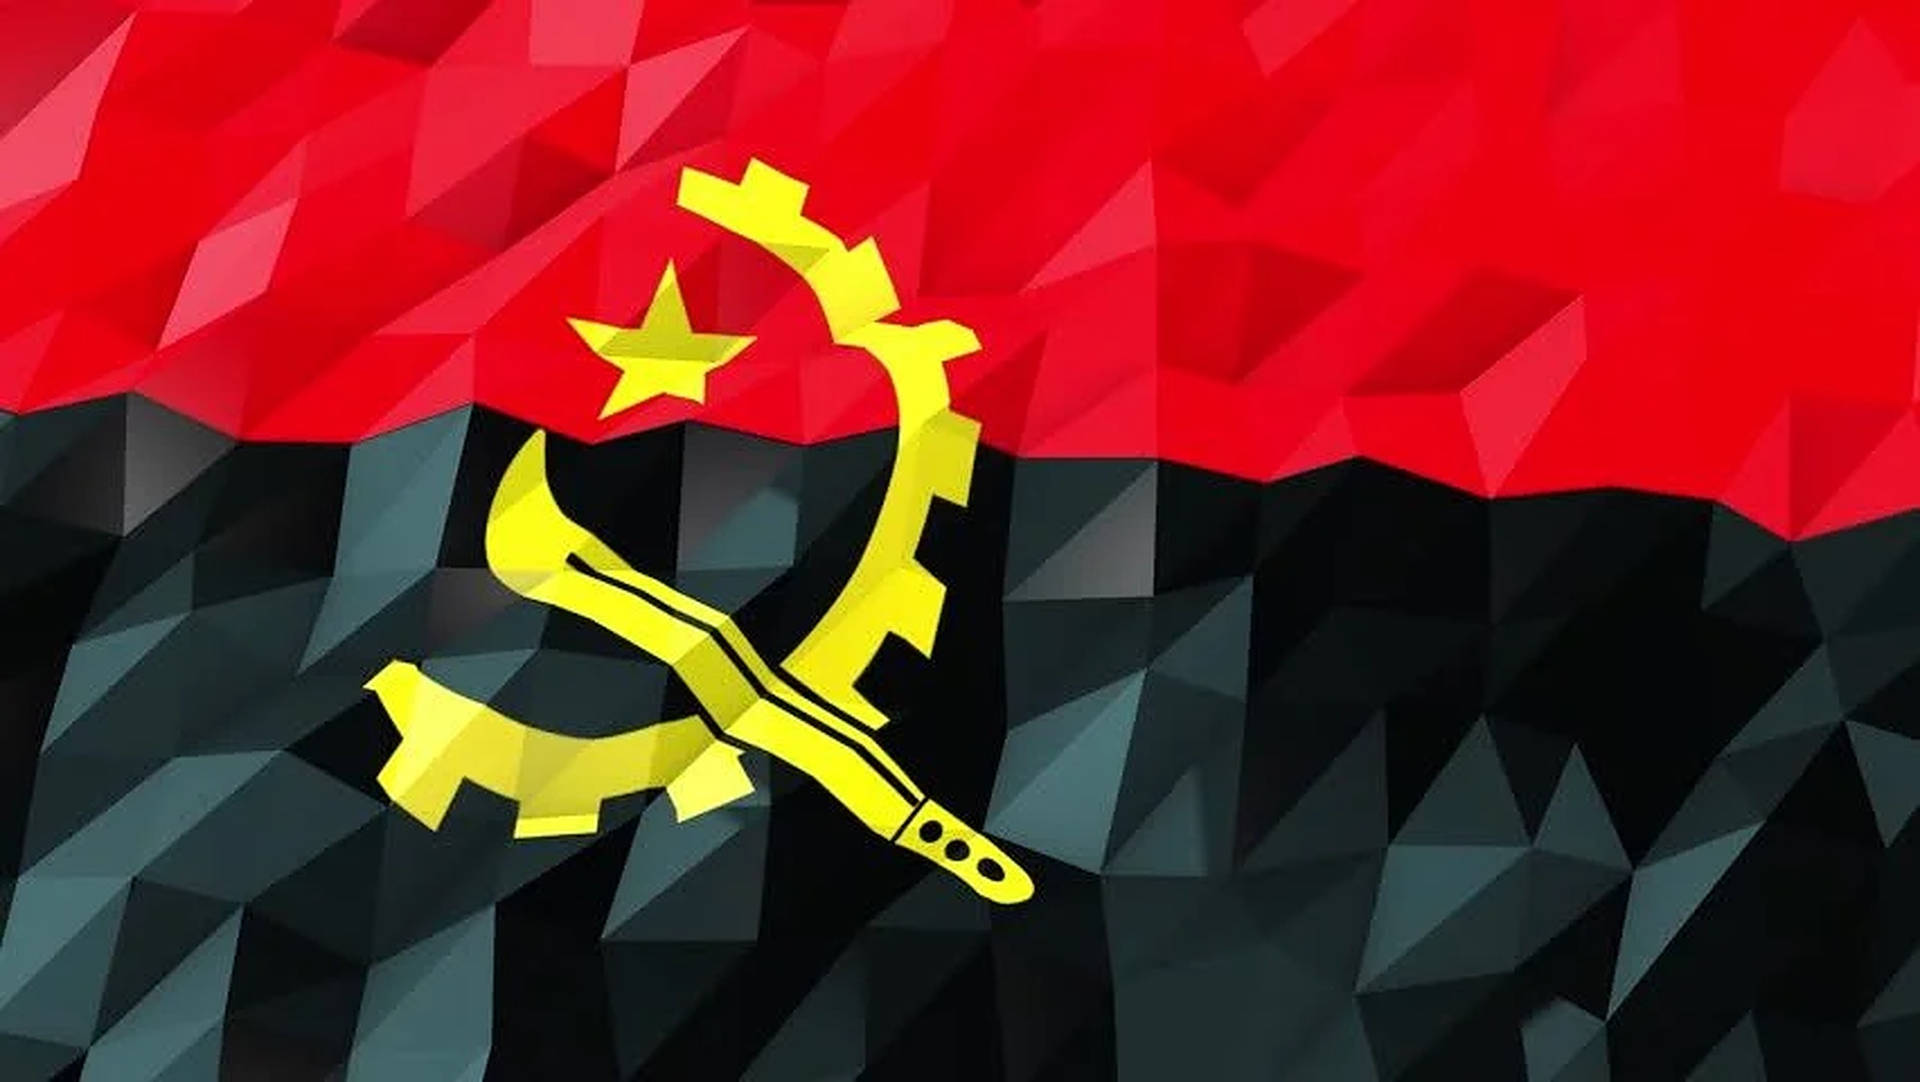 Tapet af Angola Polygon Flag Farve Blokke: Flag af Angola, der består af polygonfarveblokke. Wallpaper